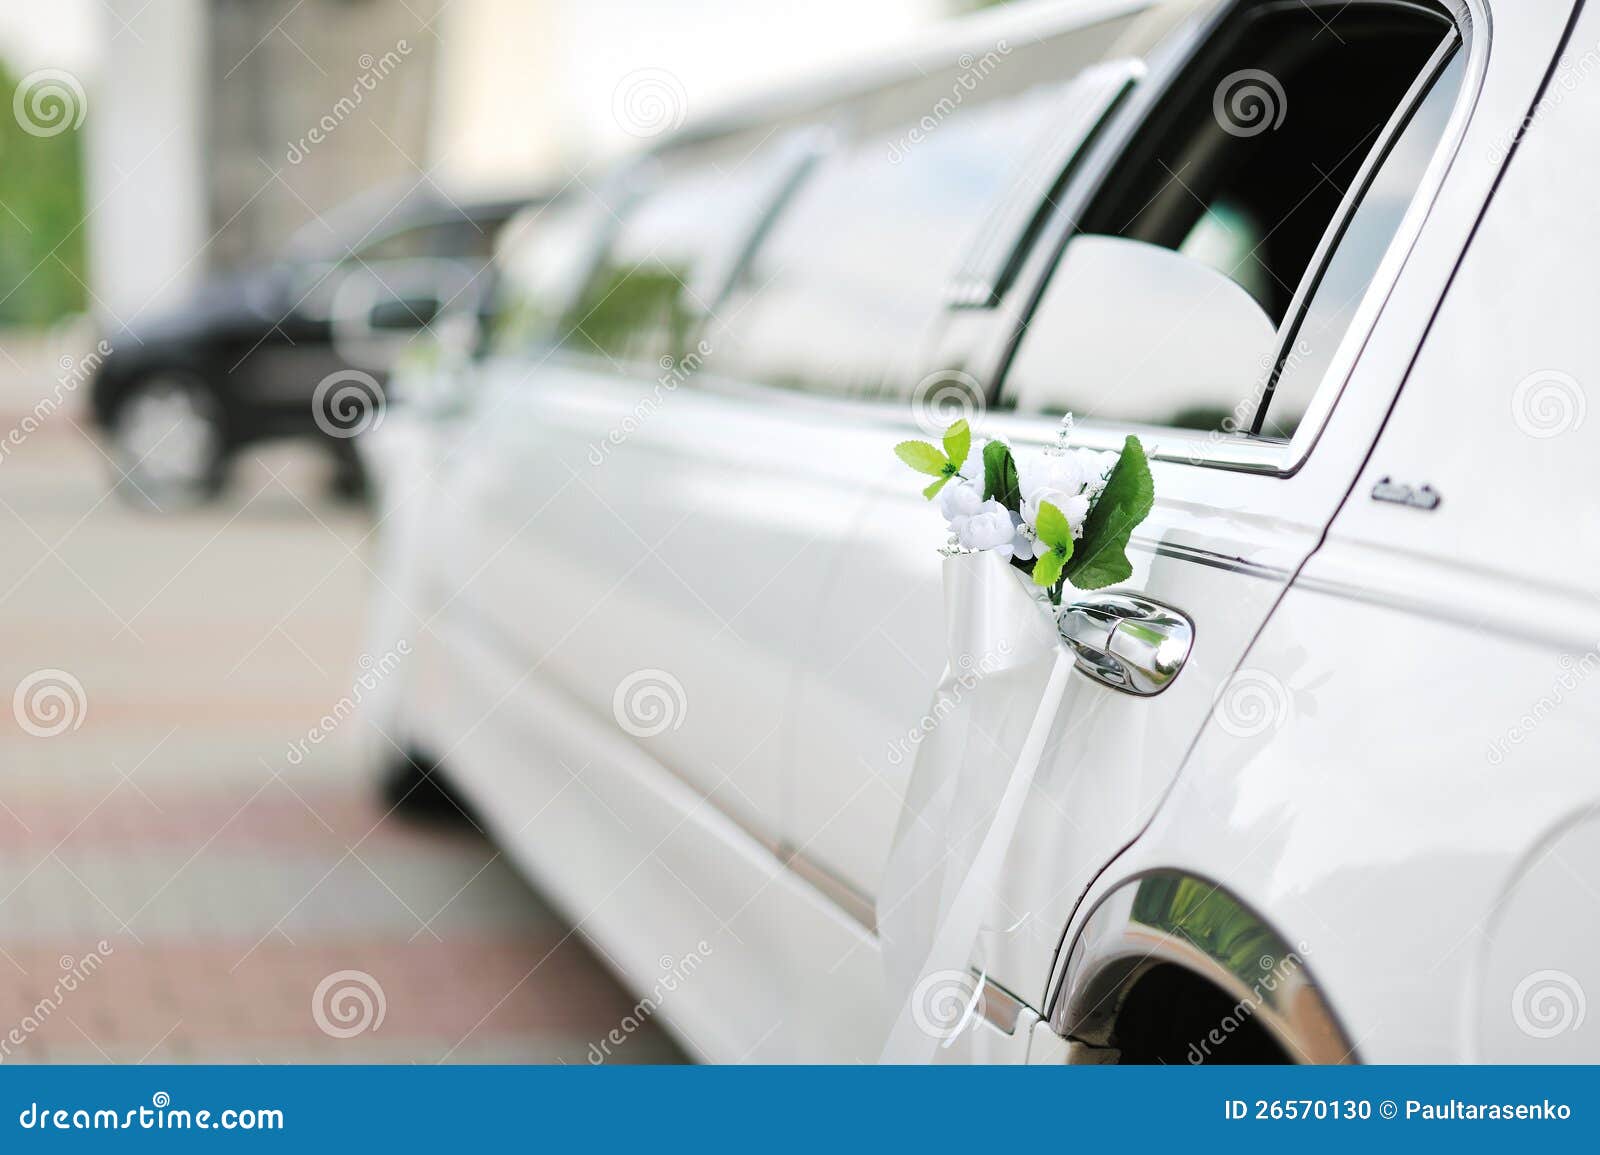 Wedding car decoration stock photo. Image of shiny, chrysanthemum ...